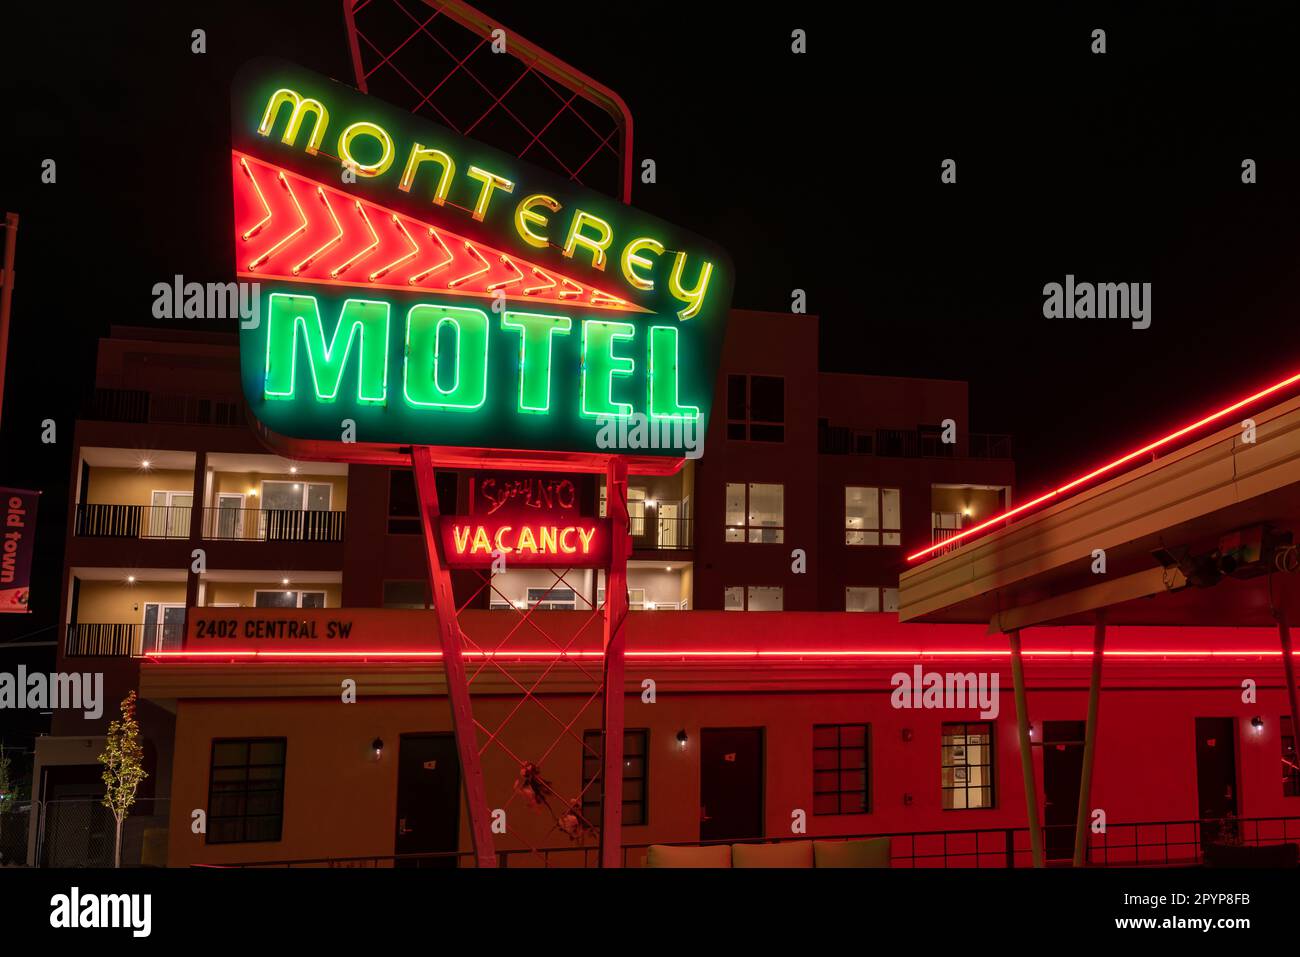 Panneau rétro, architecture googie, et une section d'un étage du Monterey Motel sur la route 66 dans la vieille ville d'Albuquerque, Nouveau-Mexique, États-Unis. Banque D'Images